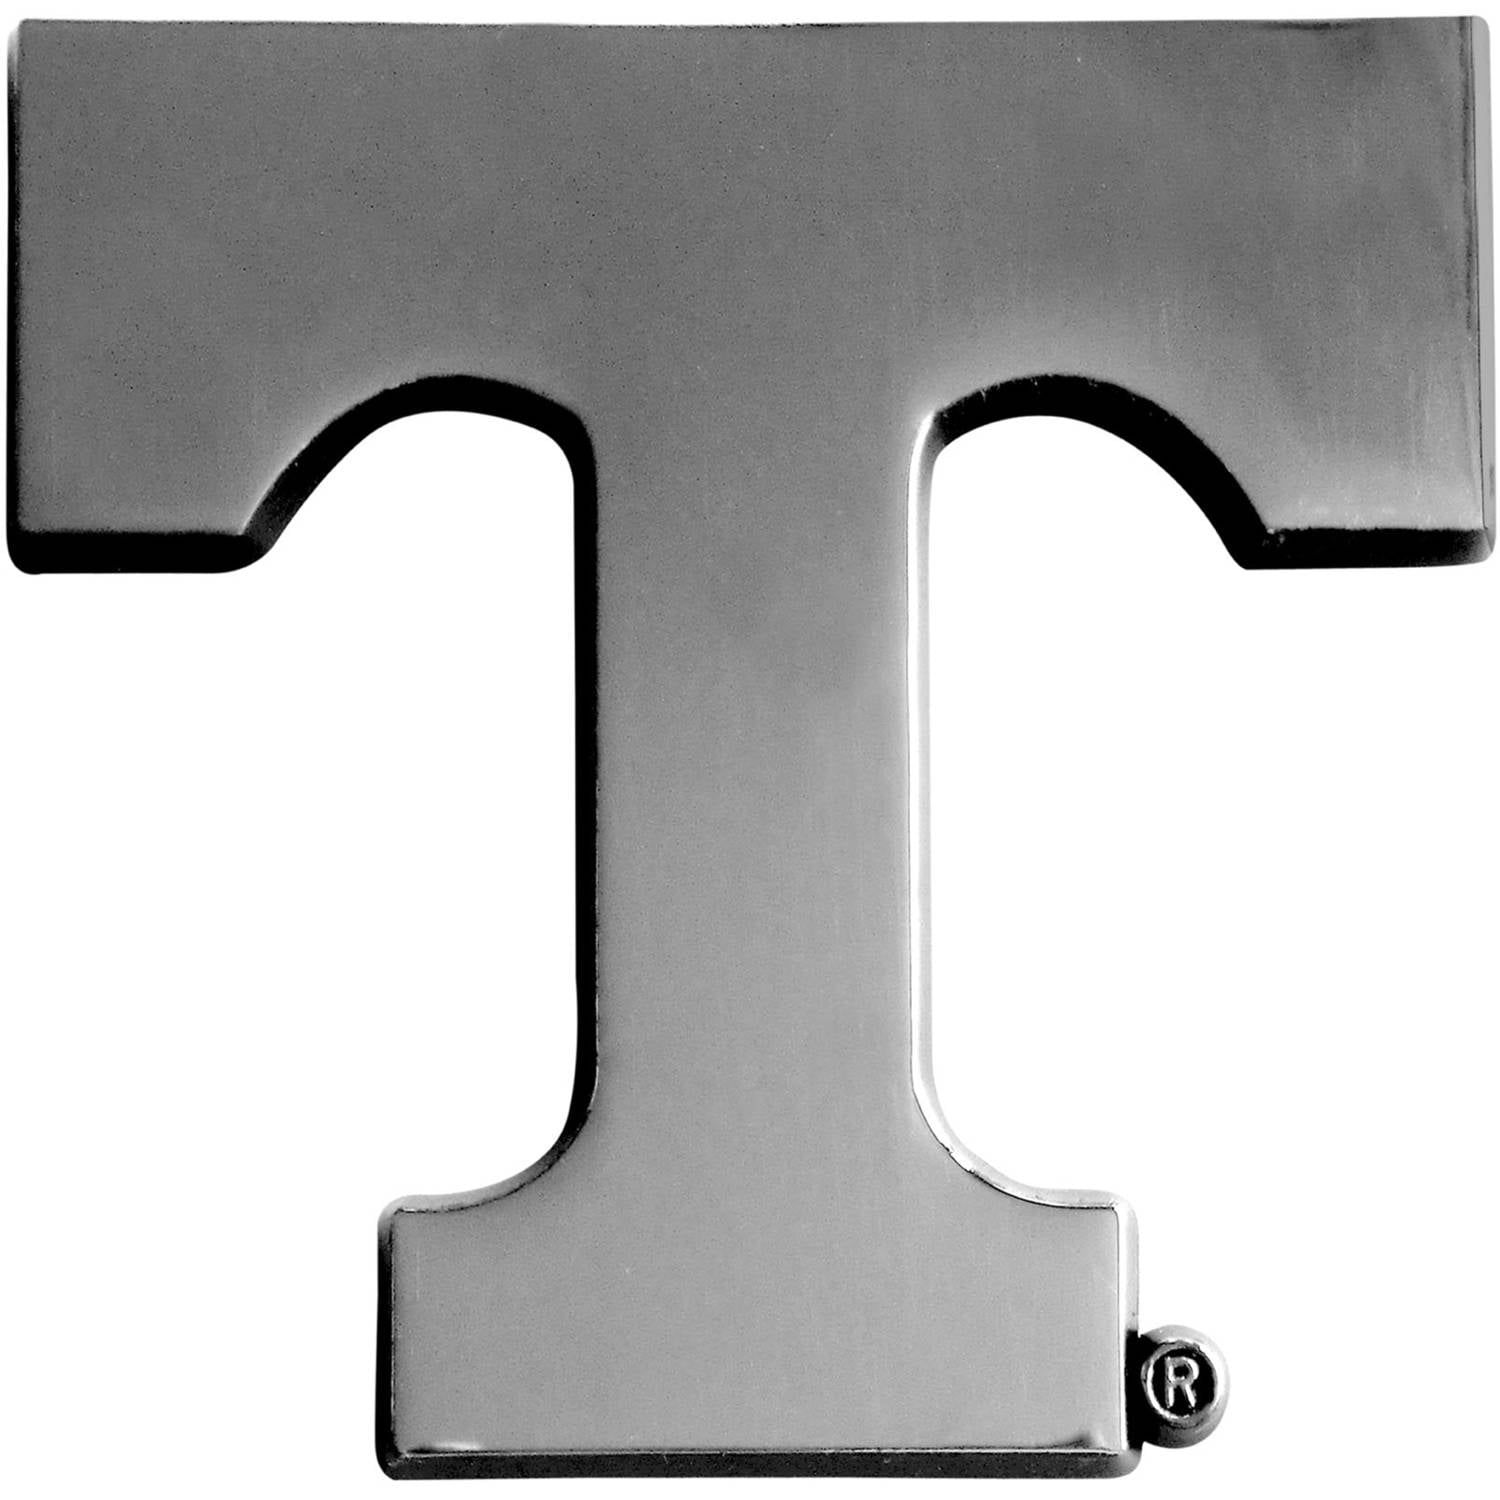 NCAA Licensed Black "T" Tennessee Volunteers Chrome Metal Auto Emblem